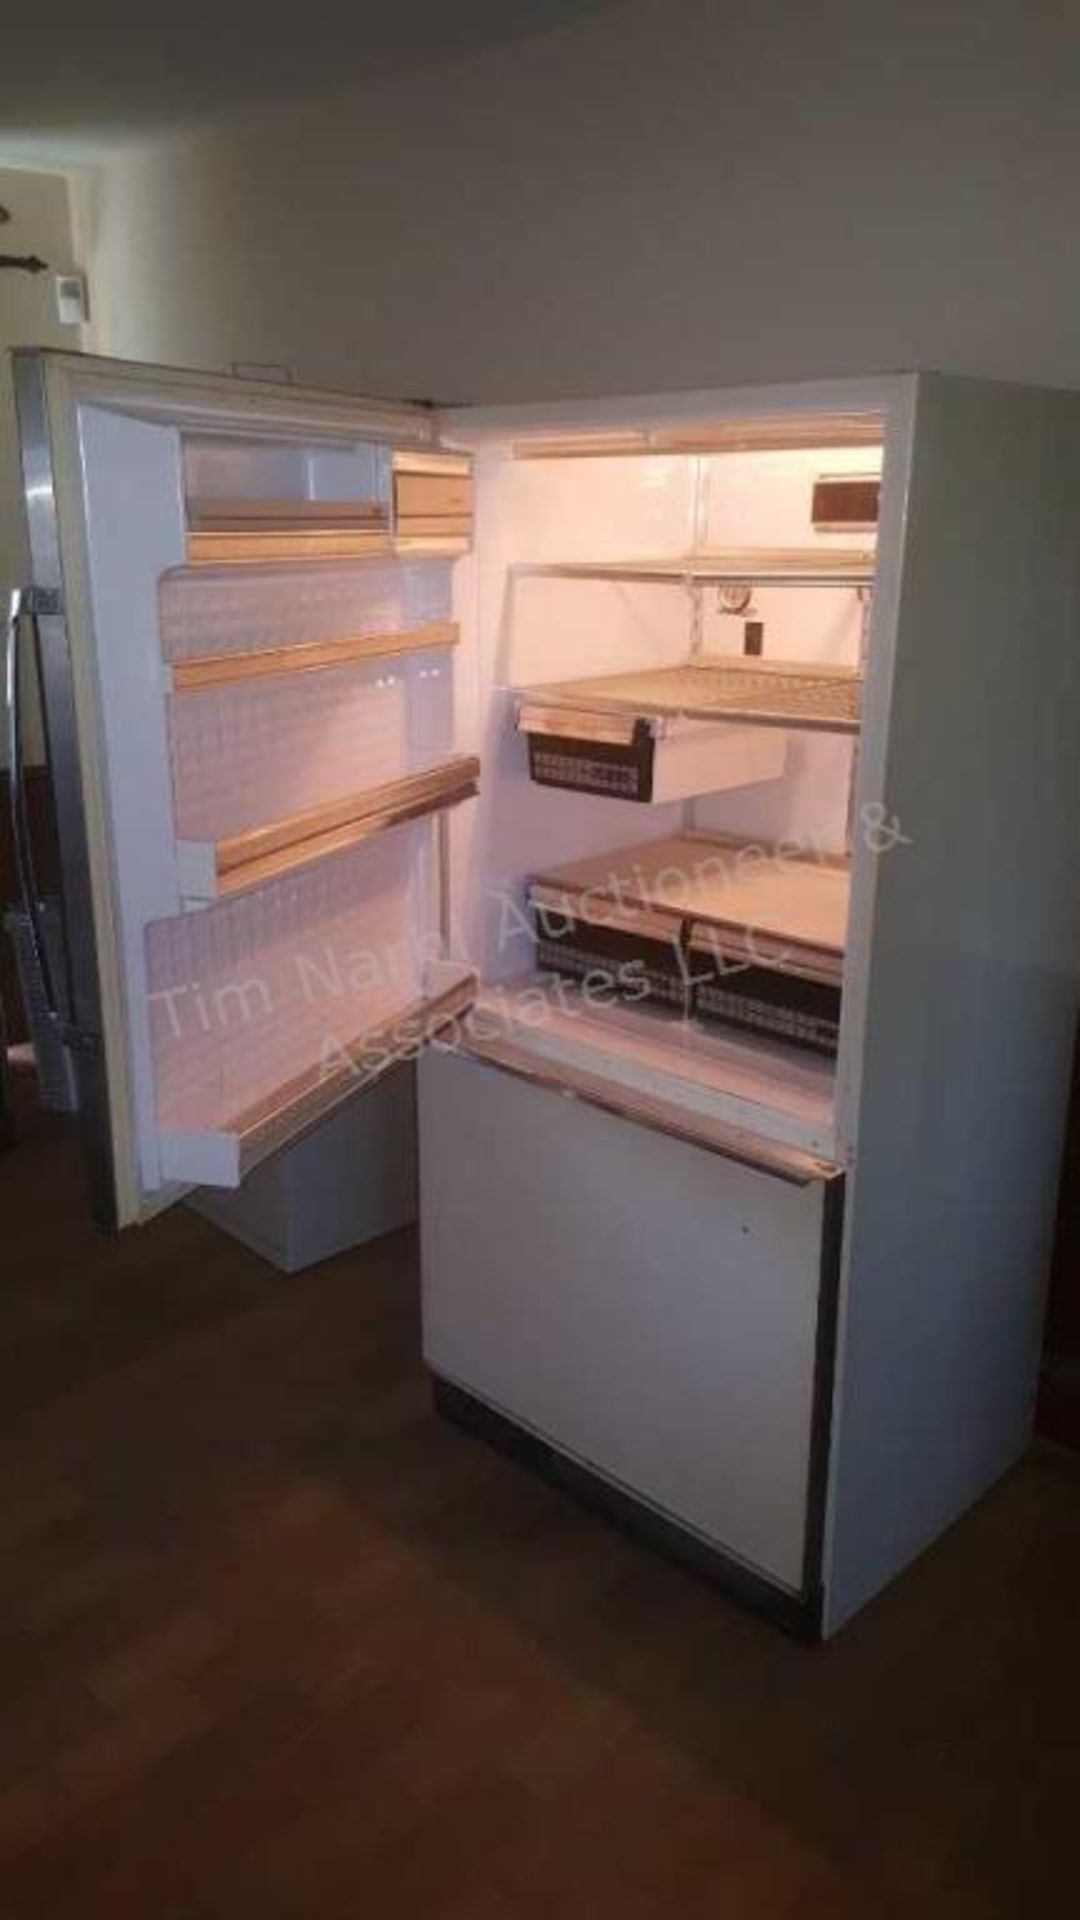 Amana 20 frost free fridge over freezer - Image 2 of 2